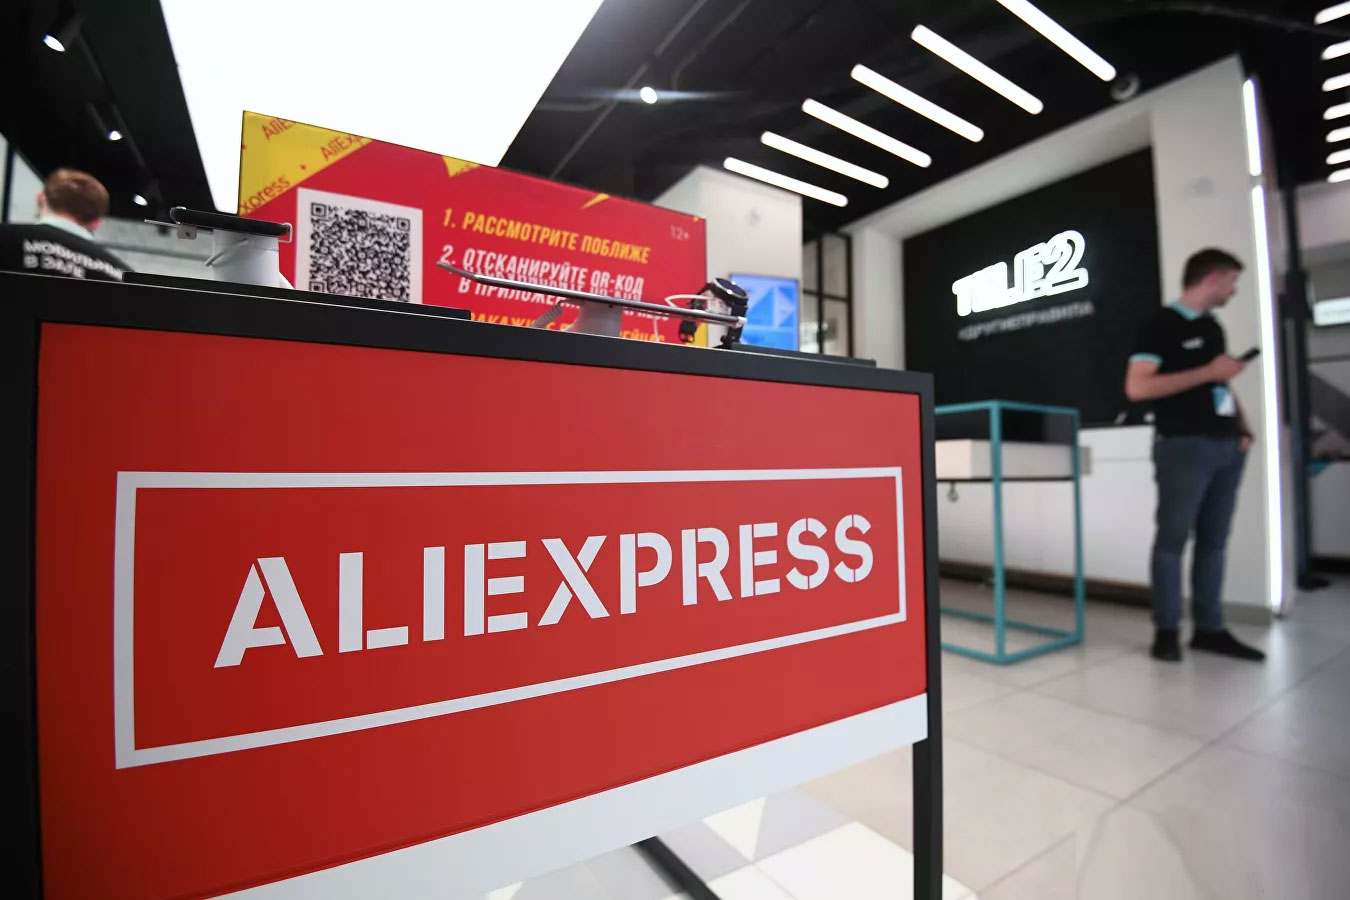 Aliexpress-ը հայտարարել է, որ Չինաստանից ստացվող ապրանքները սպառնալիք չեն պարունակում